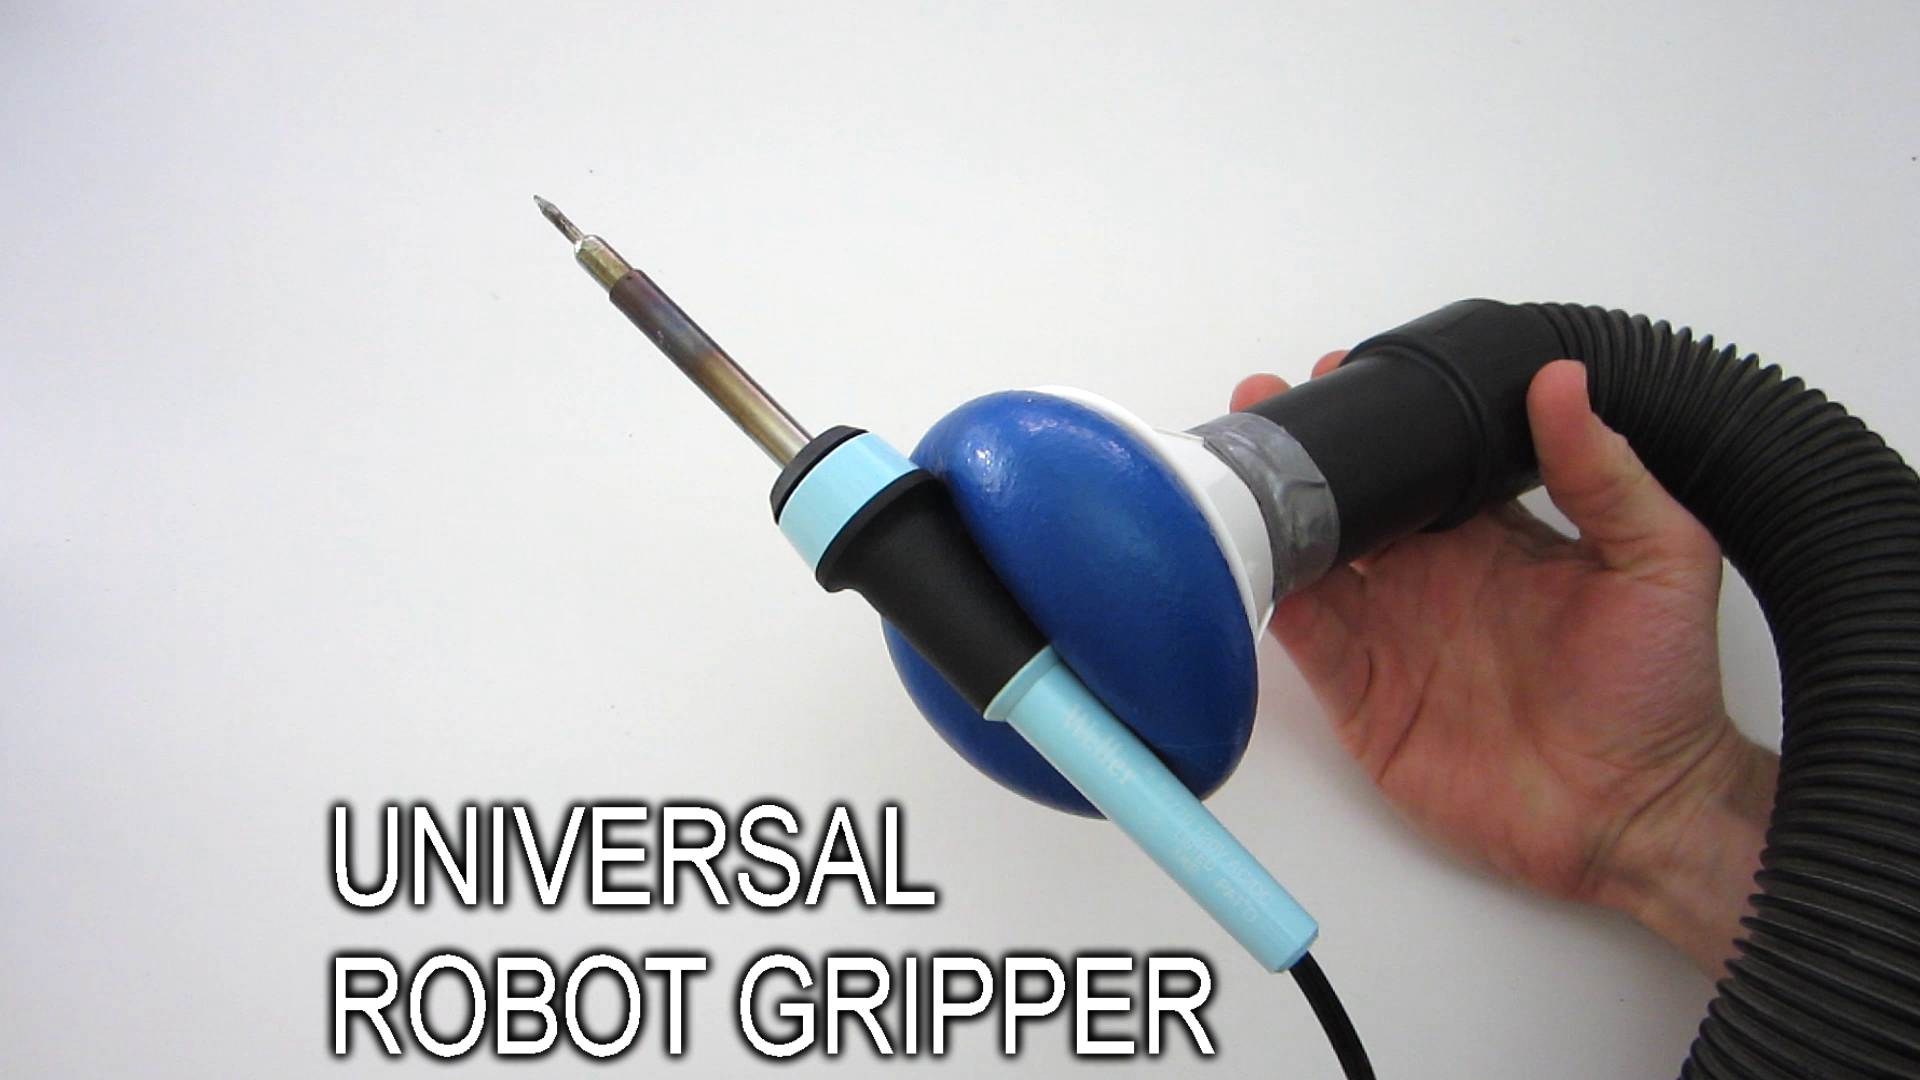 DIY Universal Robot Gripper